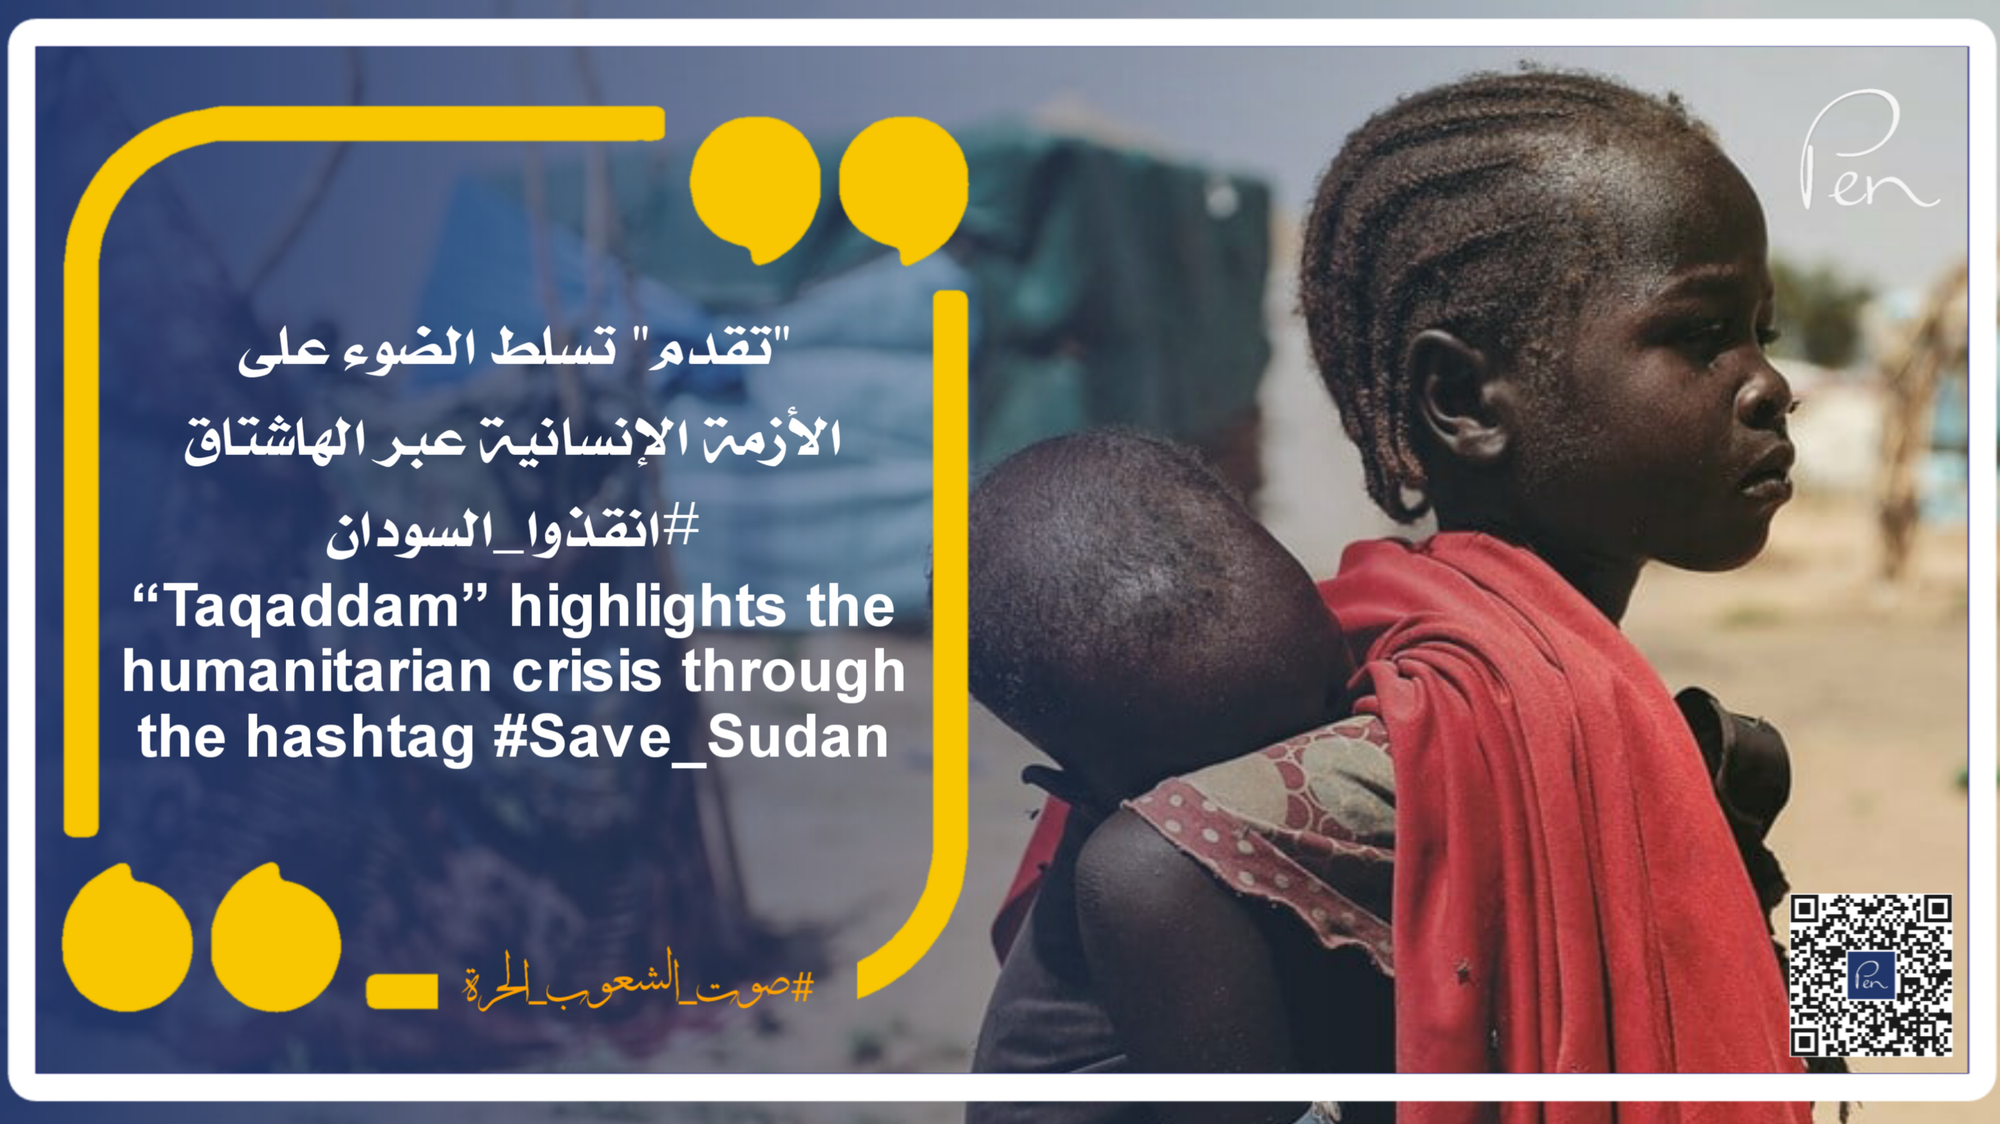 "تقدم" تسلط الضوء على الأزمة الإنسانية عبر الهاشتاق #انقذوا_السودان